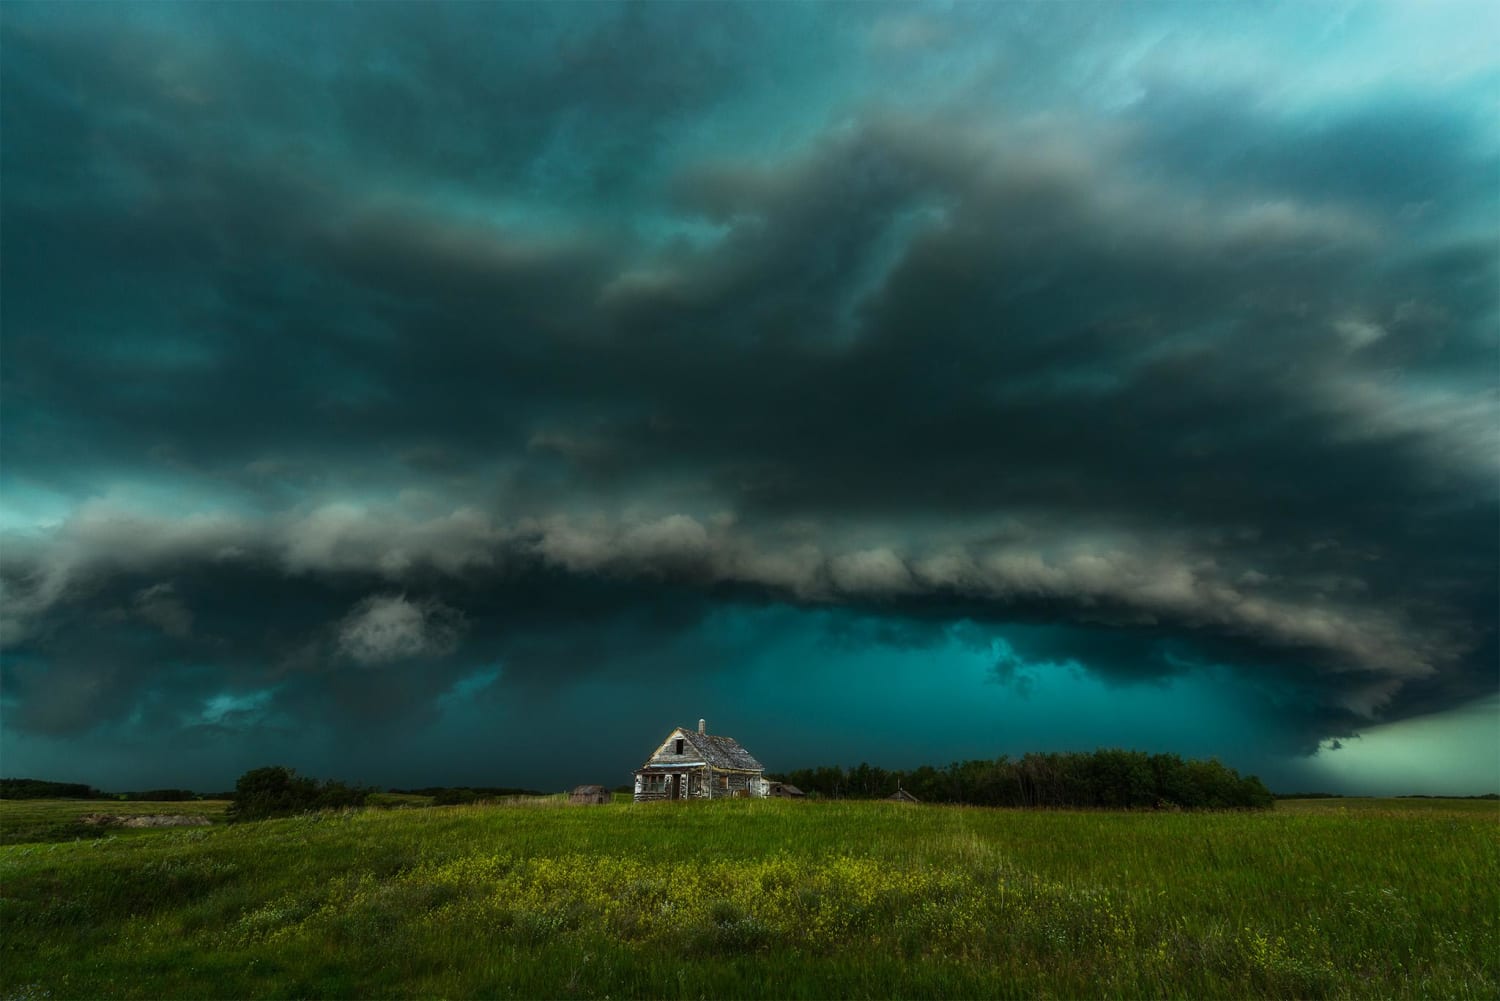 A supercell thunderstorm racing across the Saskatchewan prairie